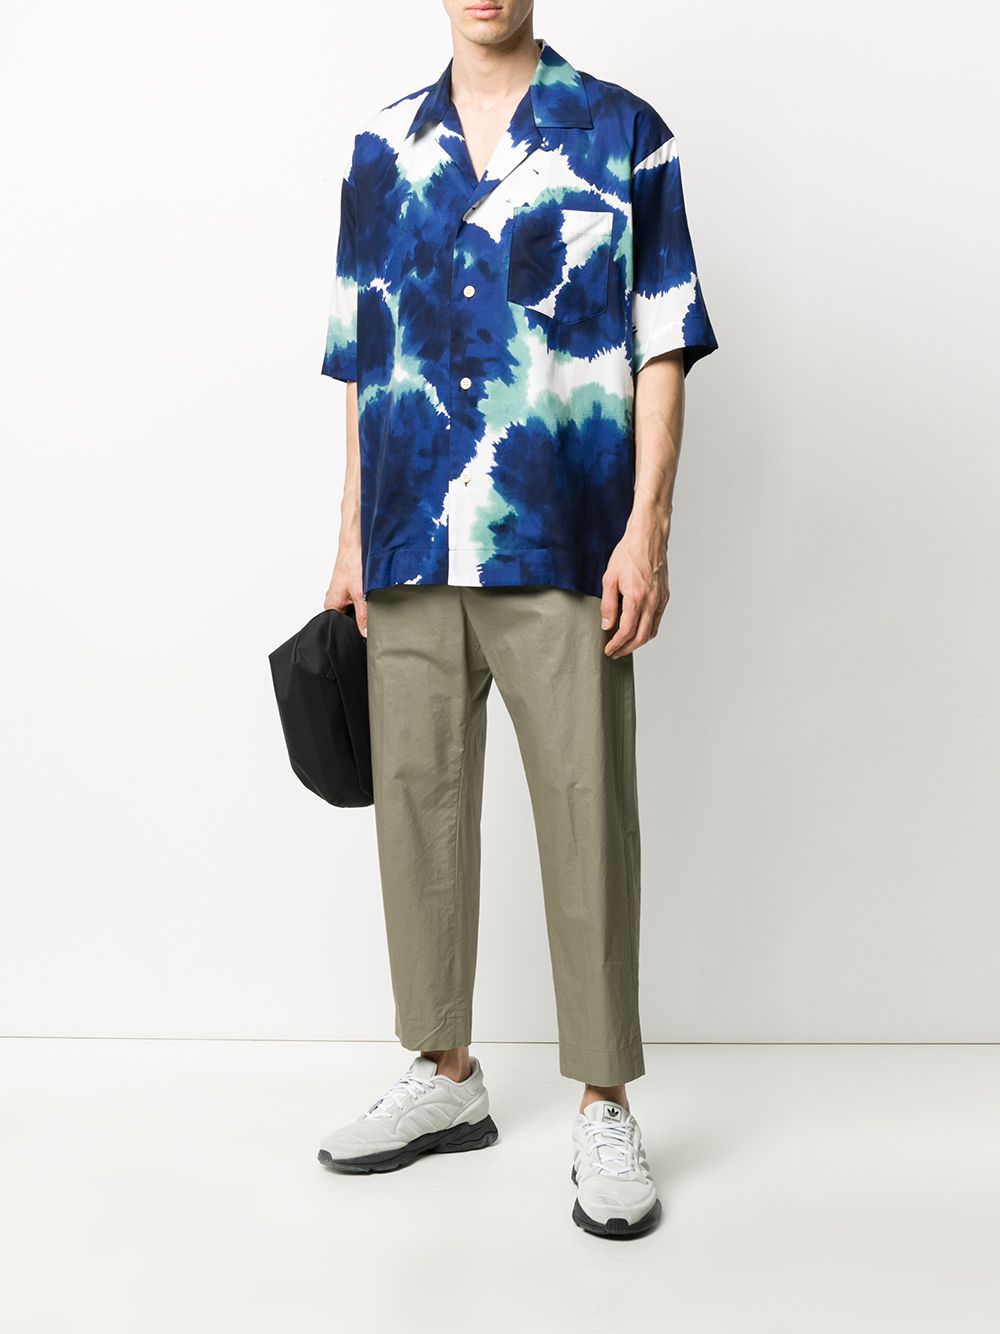 фото Issey miyake men abstract print shirt